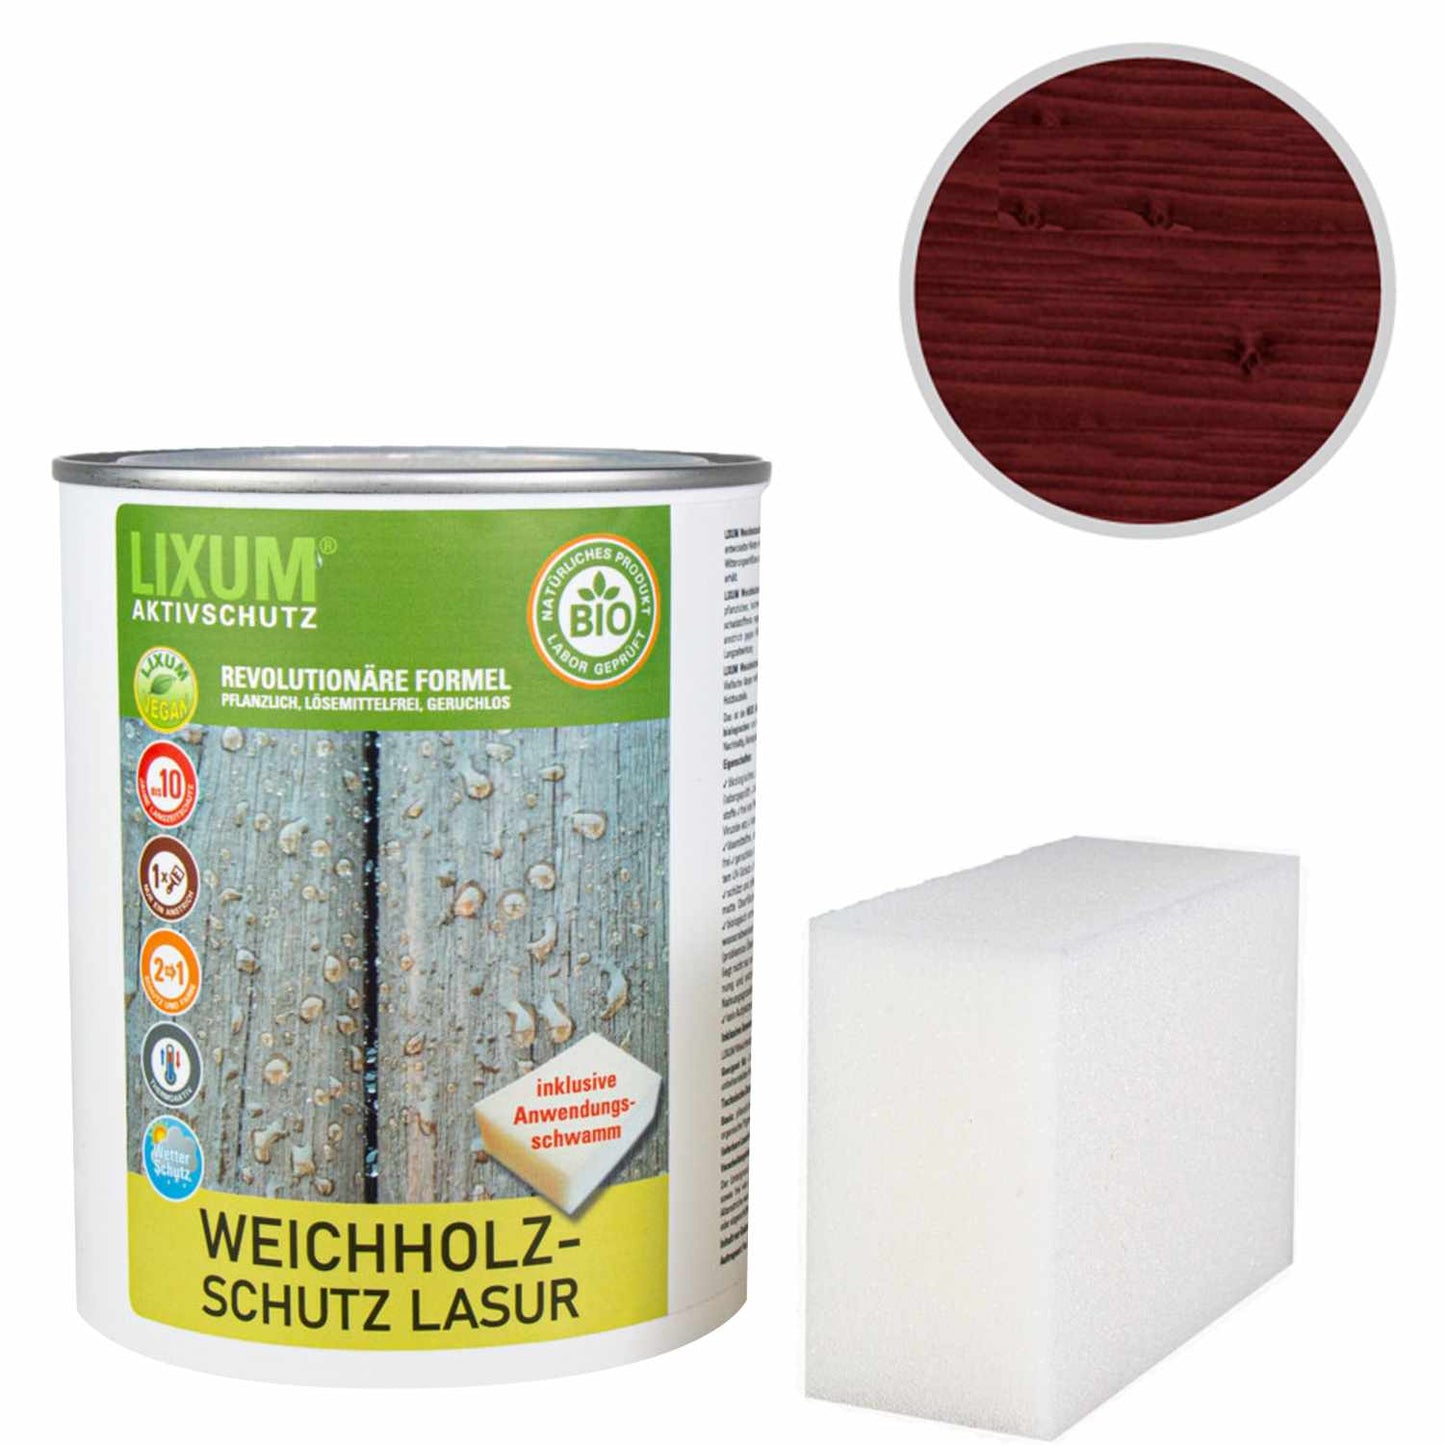 Glassa di protezione delle legno del legno biologico - Poplar - protezione del legno e cura del legno per l'esterno